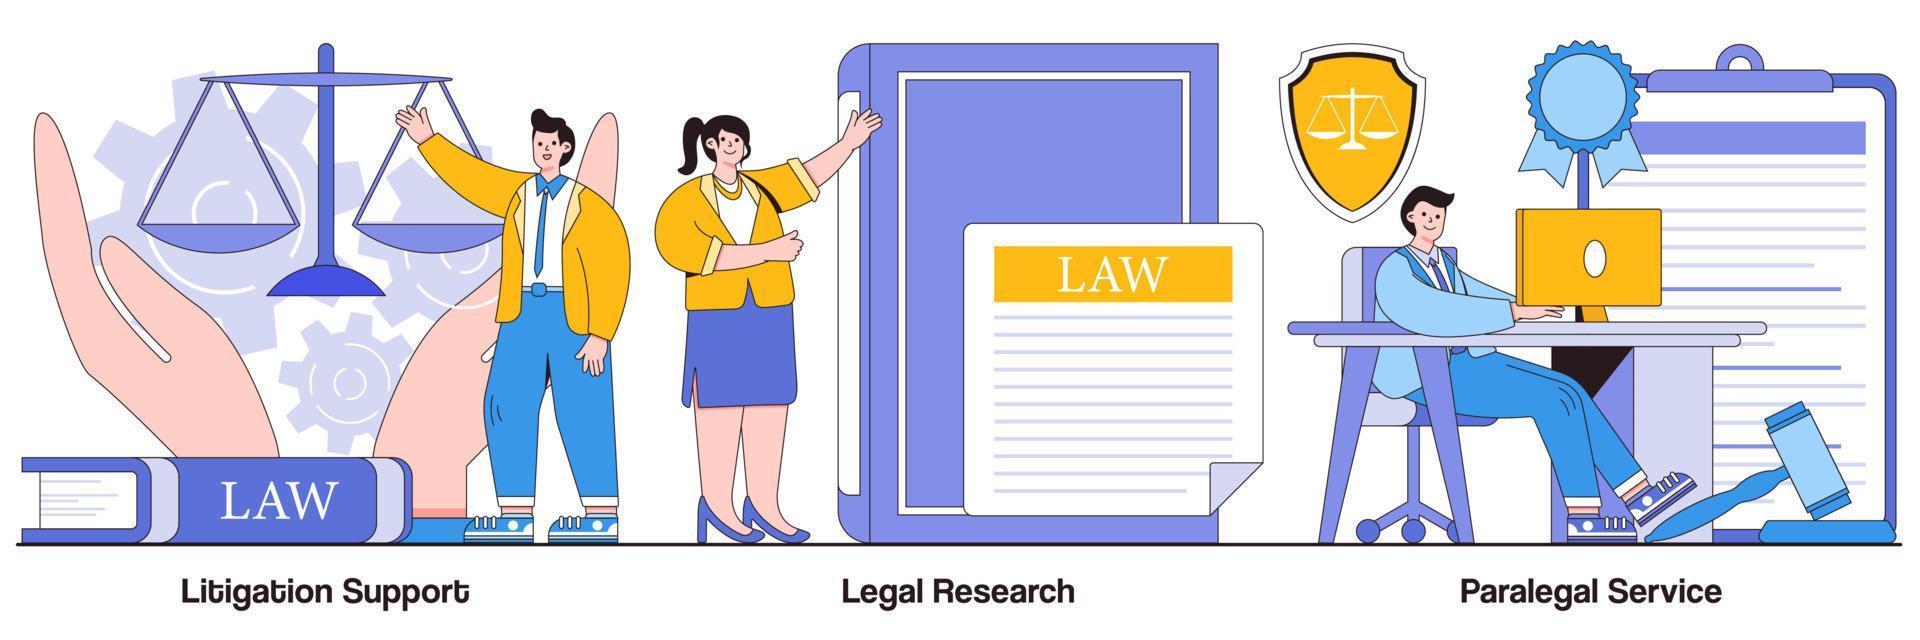 pacote ilustrado de suporte a litígios, pesquisa jurídica e serviços paralegais vetor